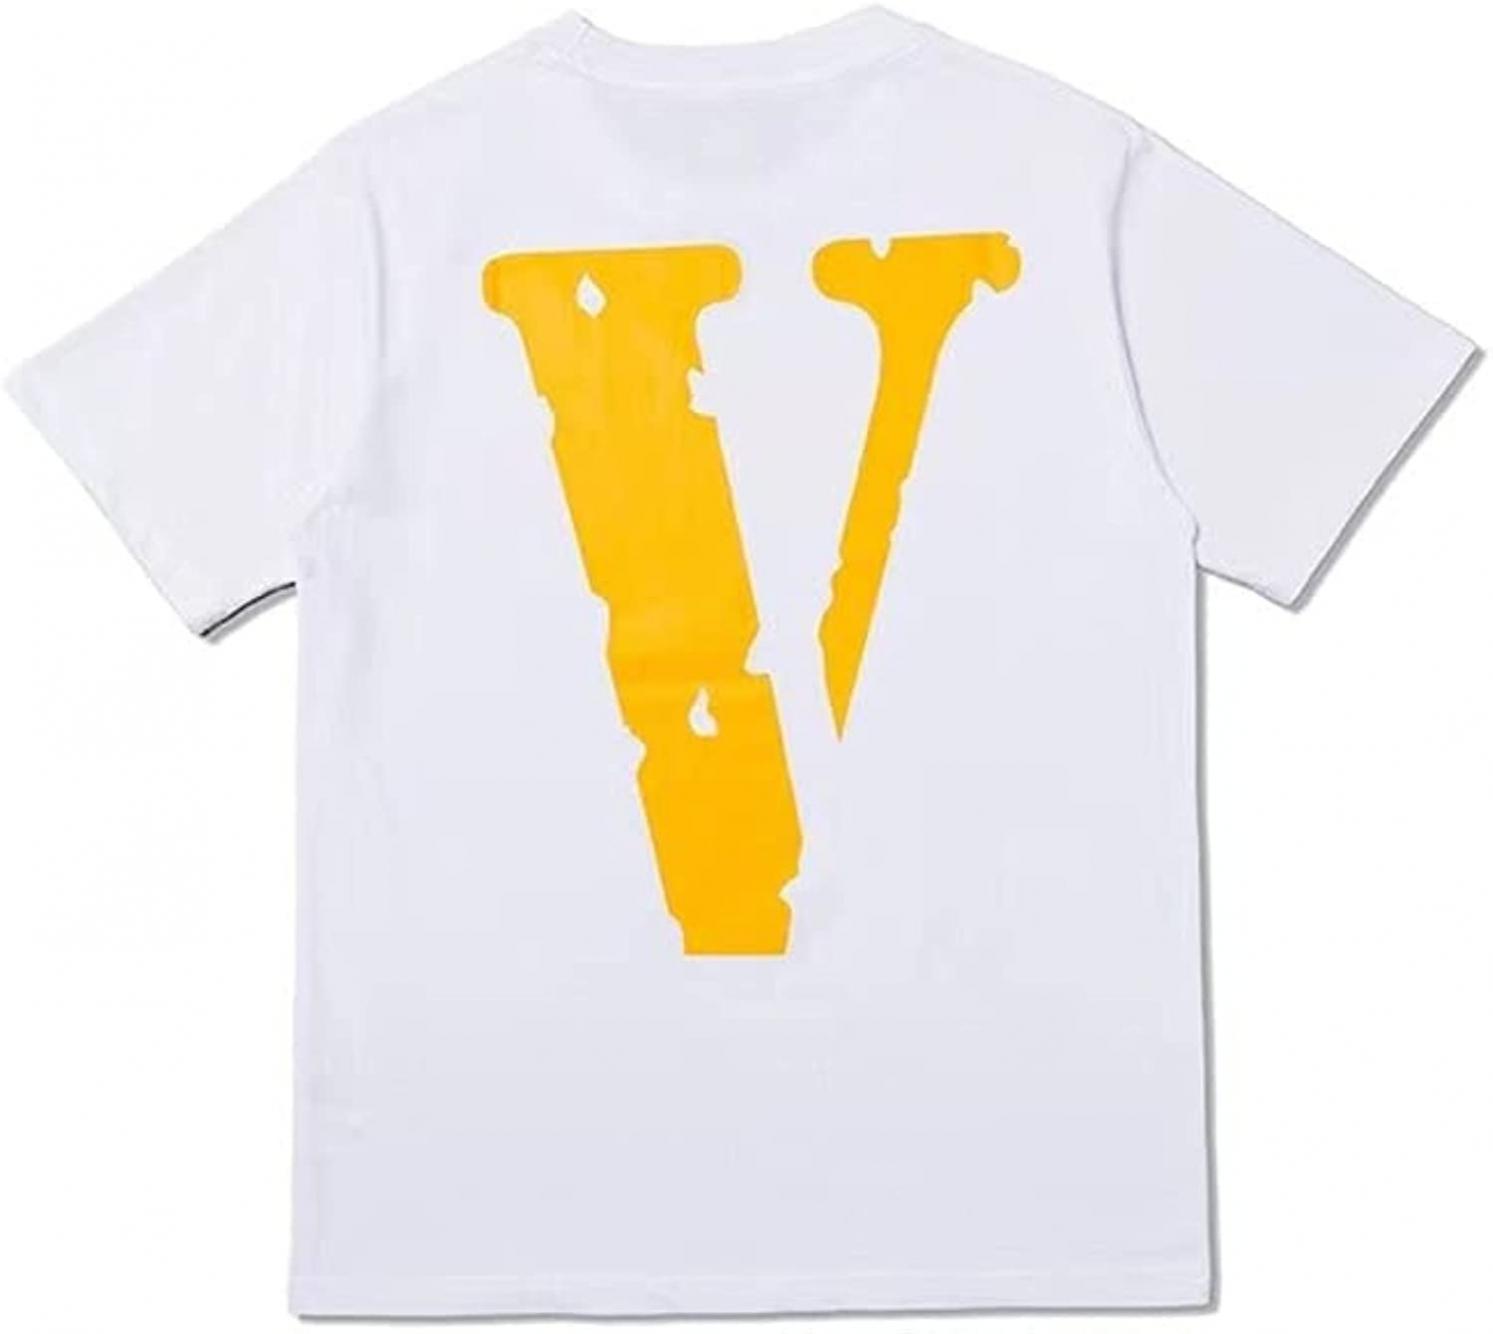 X Python Shirts Tide Hip Hop Print T Shirt Classic Friends Big Yellow V Cotton Short Sleeve Loose T-Shirt